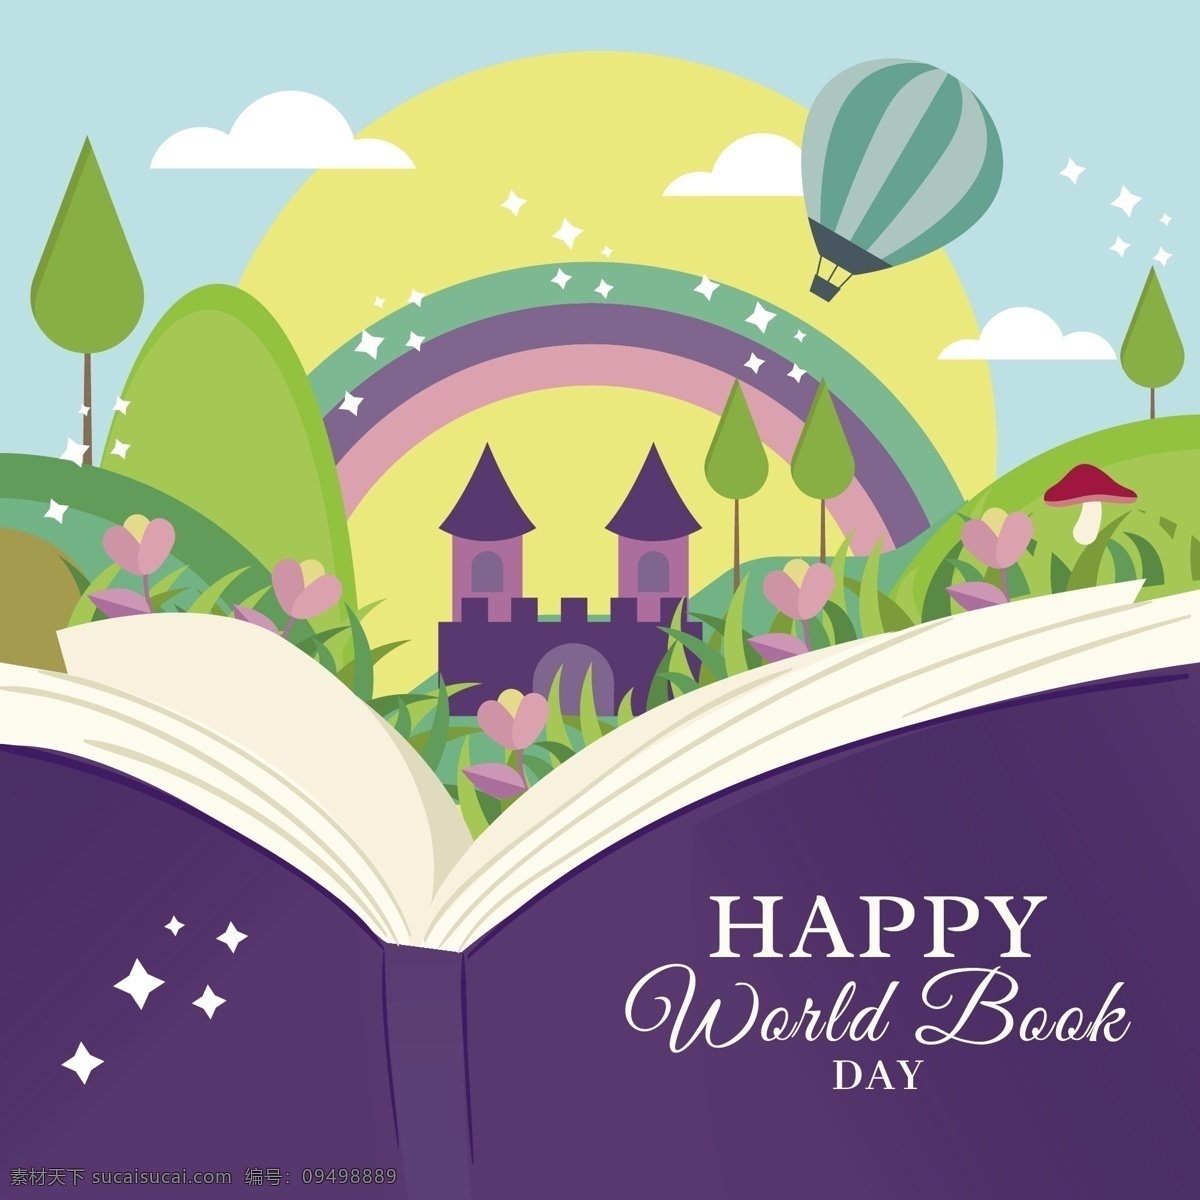 浪漫 紫色 彩绘 书本 世界 读书 日 节日 元素 蓝色底纹 白云 城堡 绿植 节日元素 绿色热气球 世界读书日